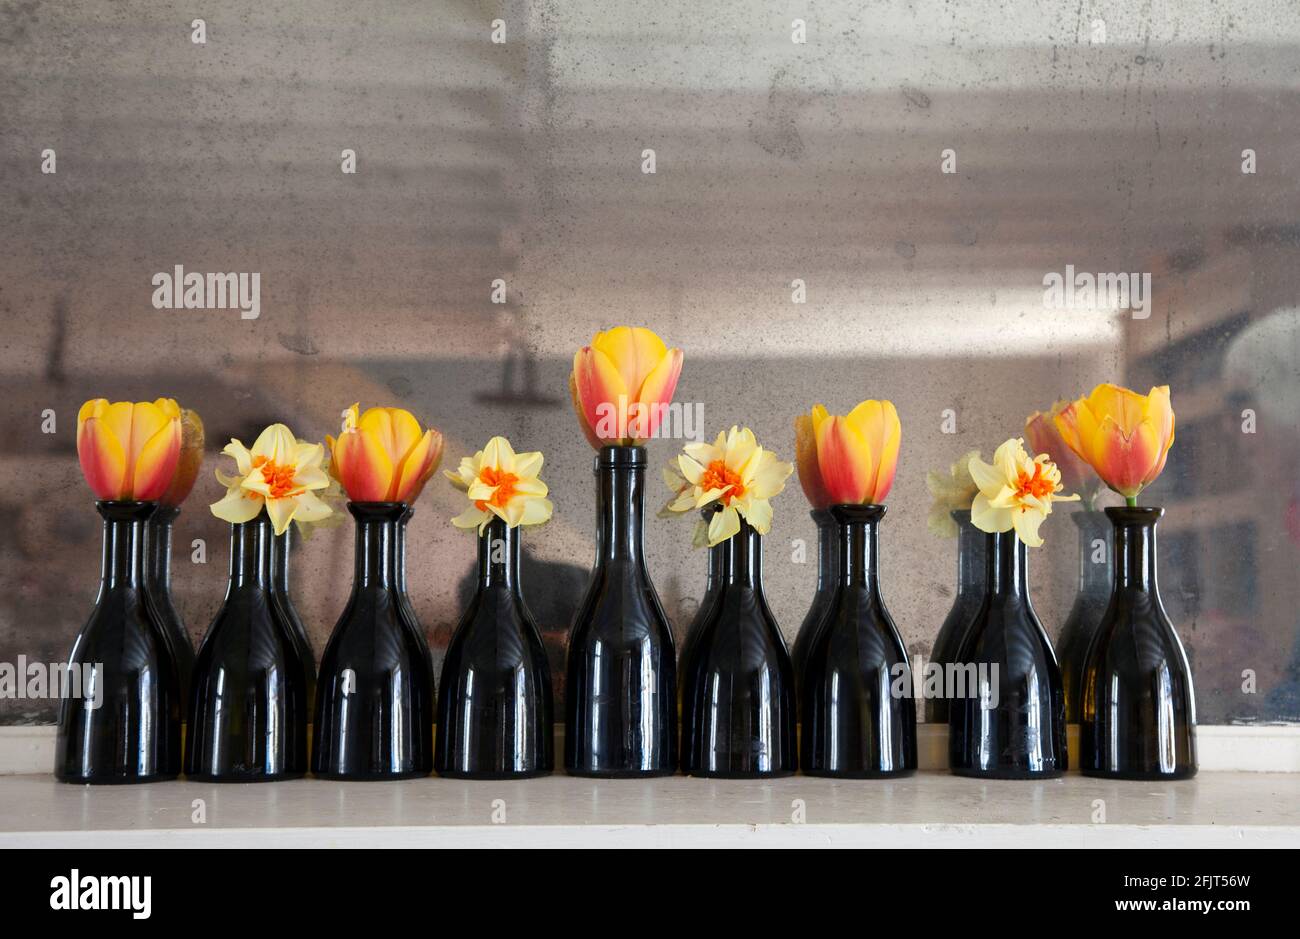 Tulipes et jonquilles en bouteilles de vinaigre balsamique de Lidl Banque D'Images